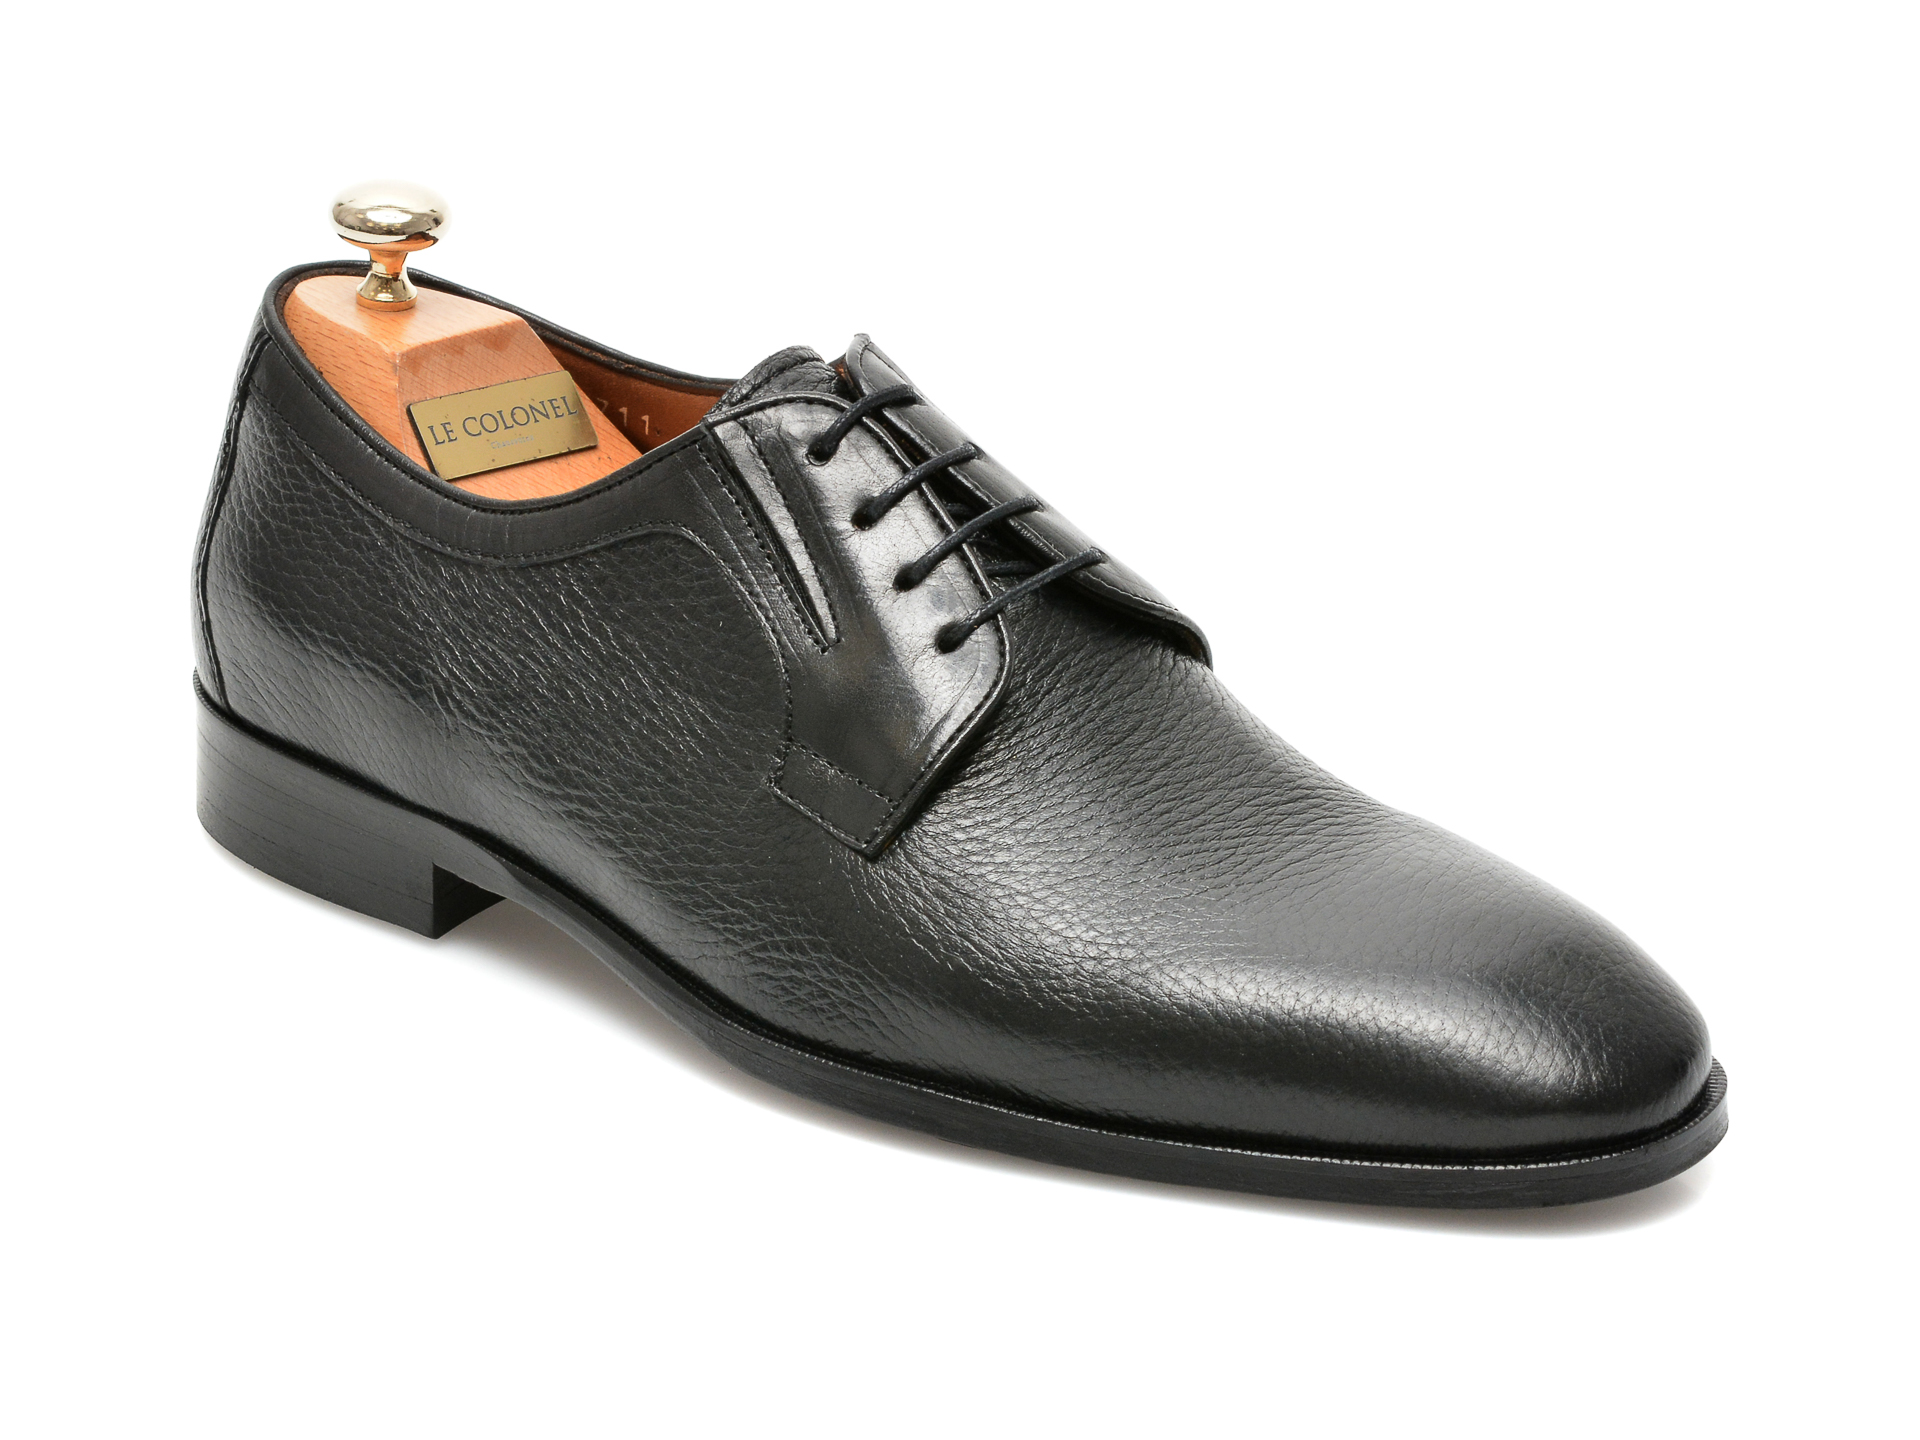 Pantofi LE COLONEL negri, 48711, din piele naturala Le Colonel